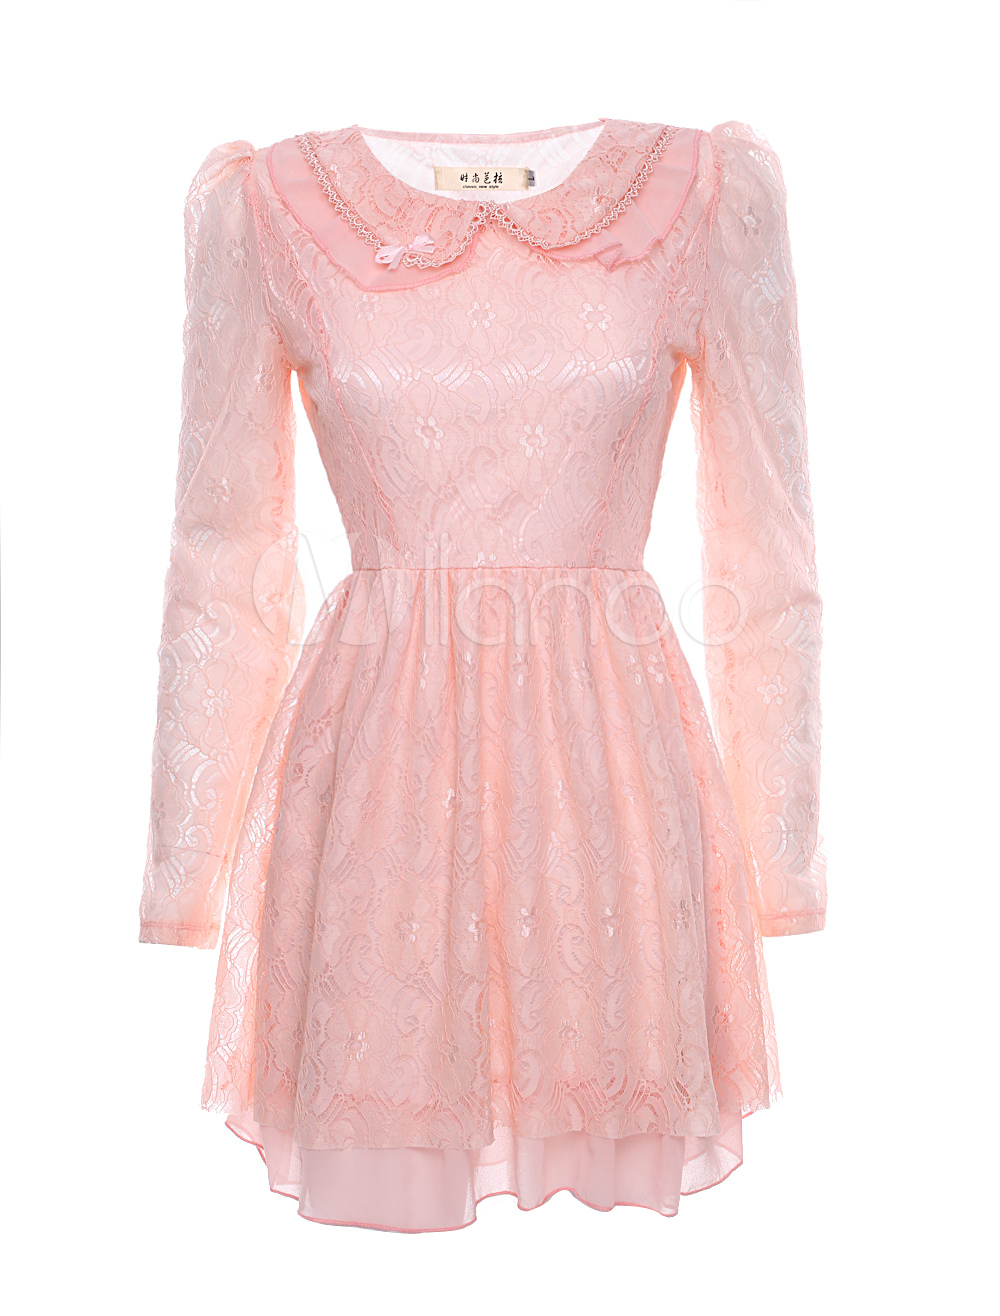 Sweet Pink Lace Peter Pan Collar Long Sleeves Women's Skater Dress ...